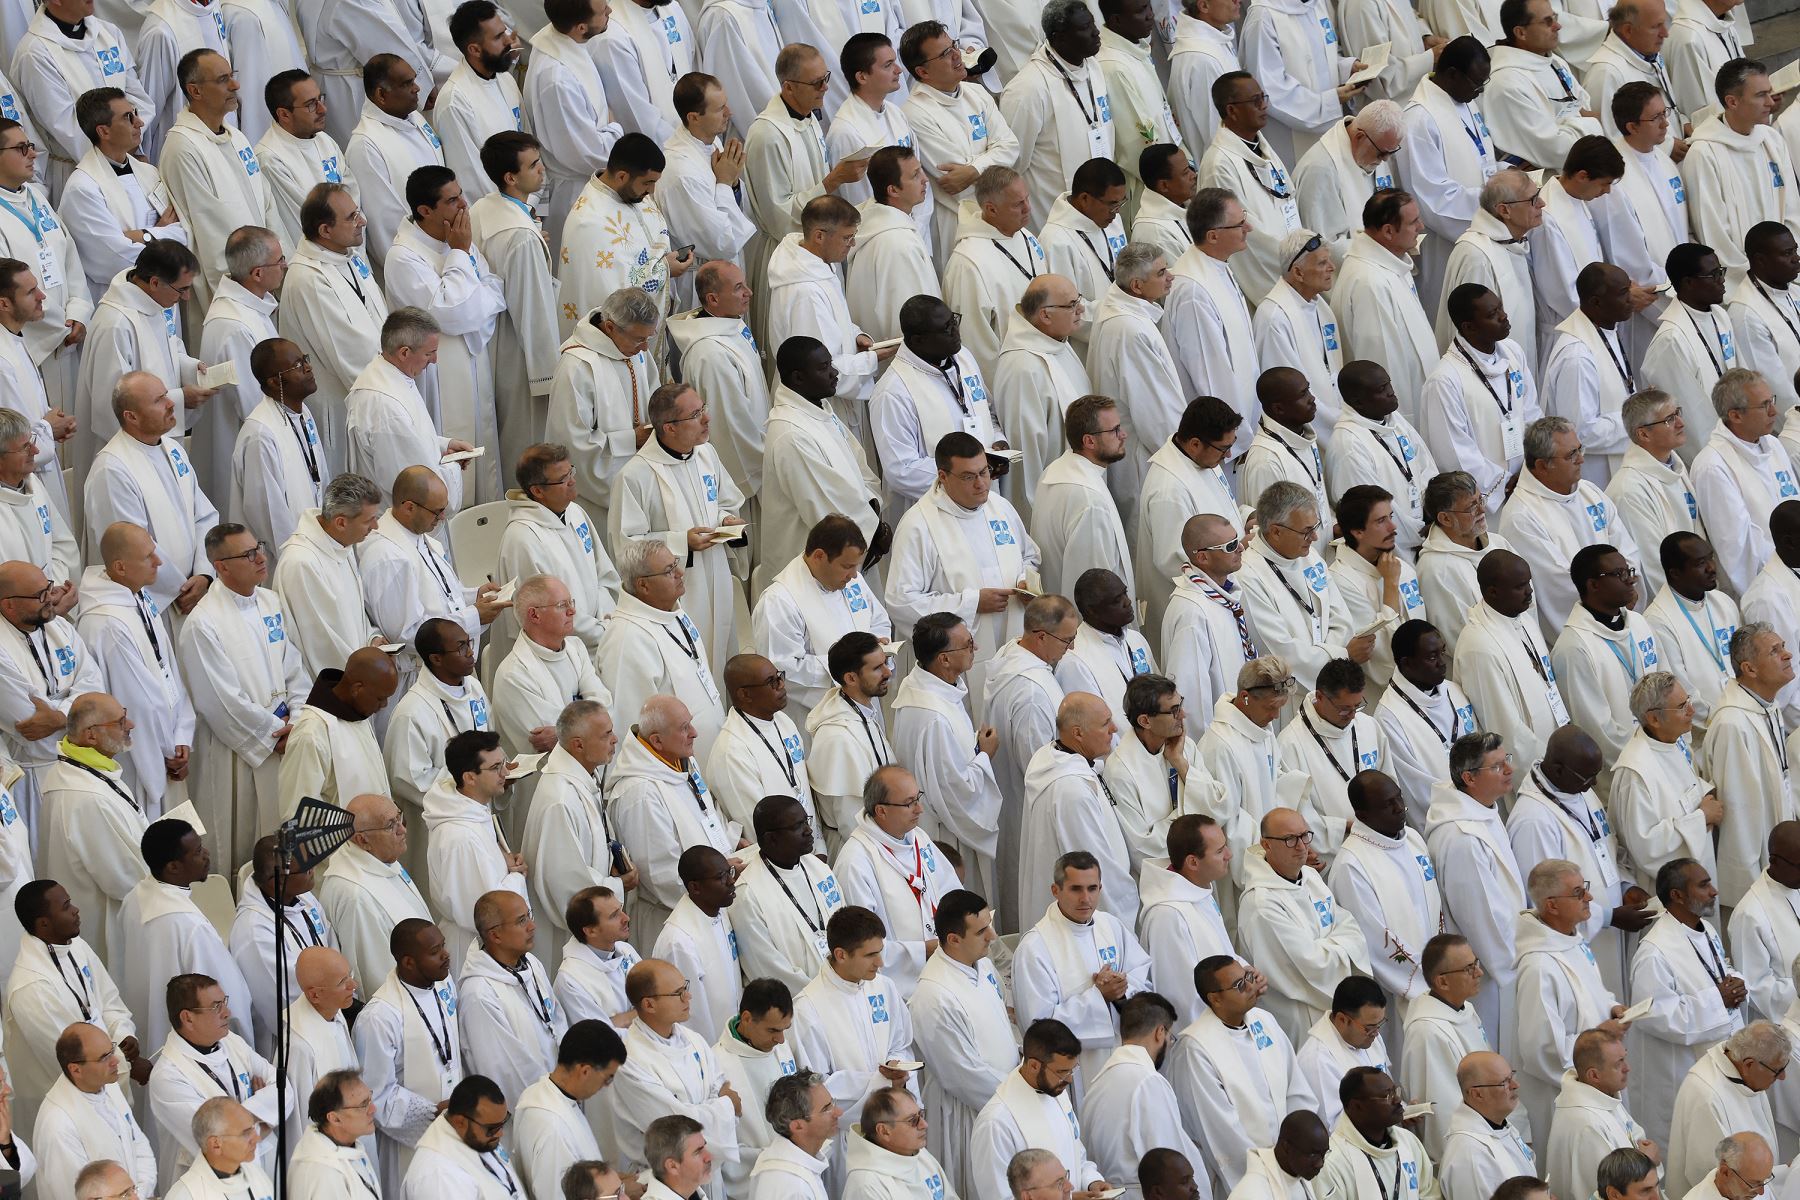 El clero espera la llegada del Papa Francisco al estadio Velódromo, donde celebrará misa, en la ciudad portuaria sureña de Marsella.
Foto: AFP